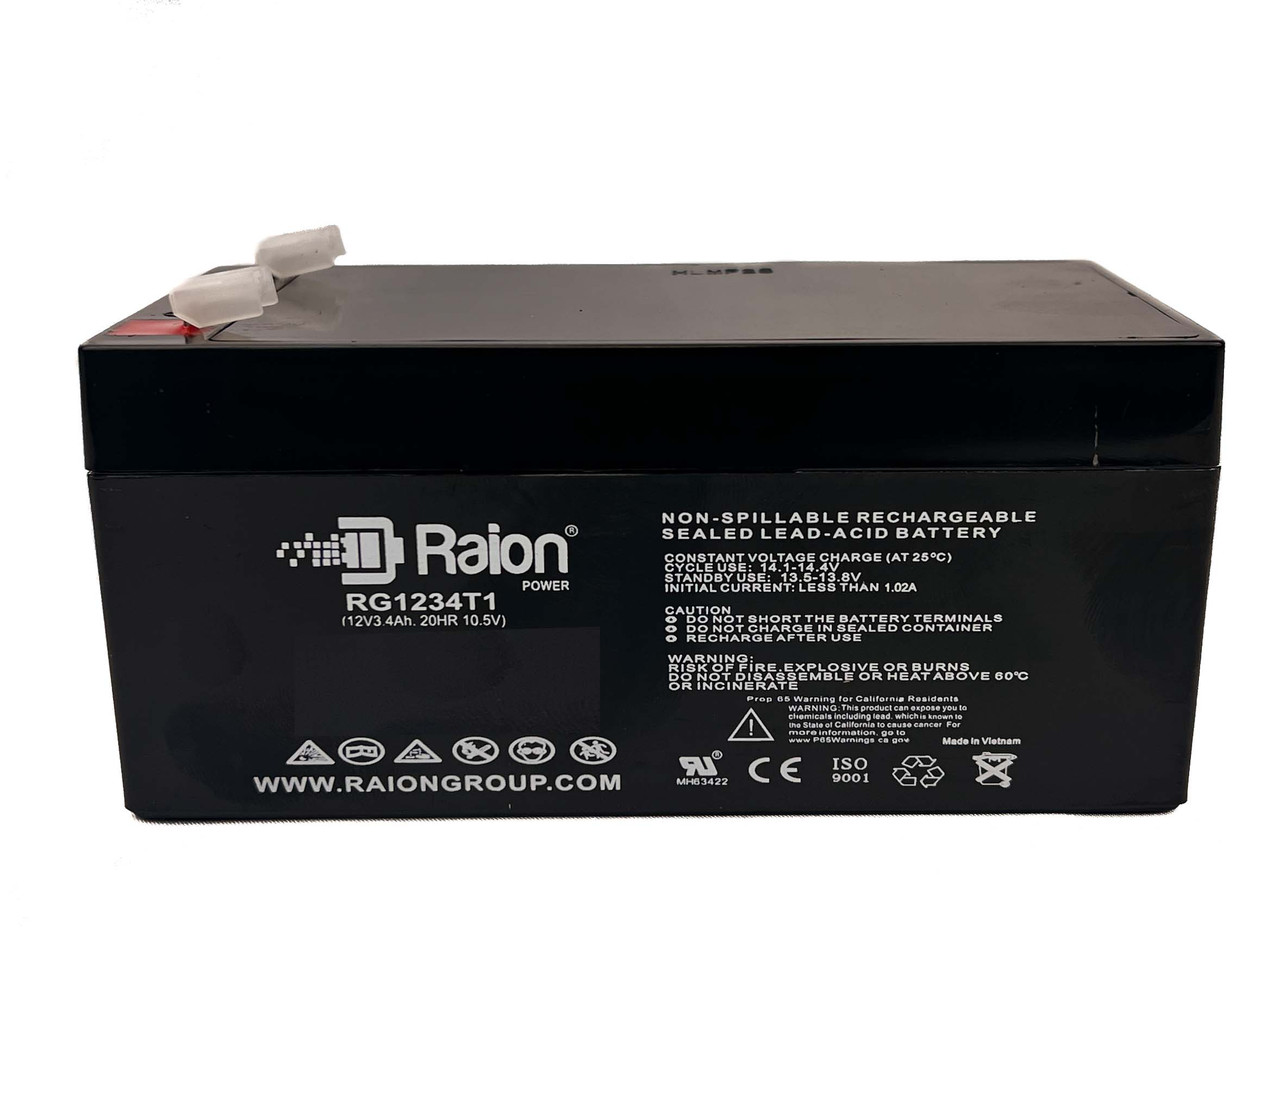 Raion Power RG1234T1 Rechargeable Compatible Replacement Battery for Landport LP12-3.2